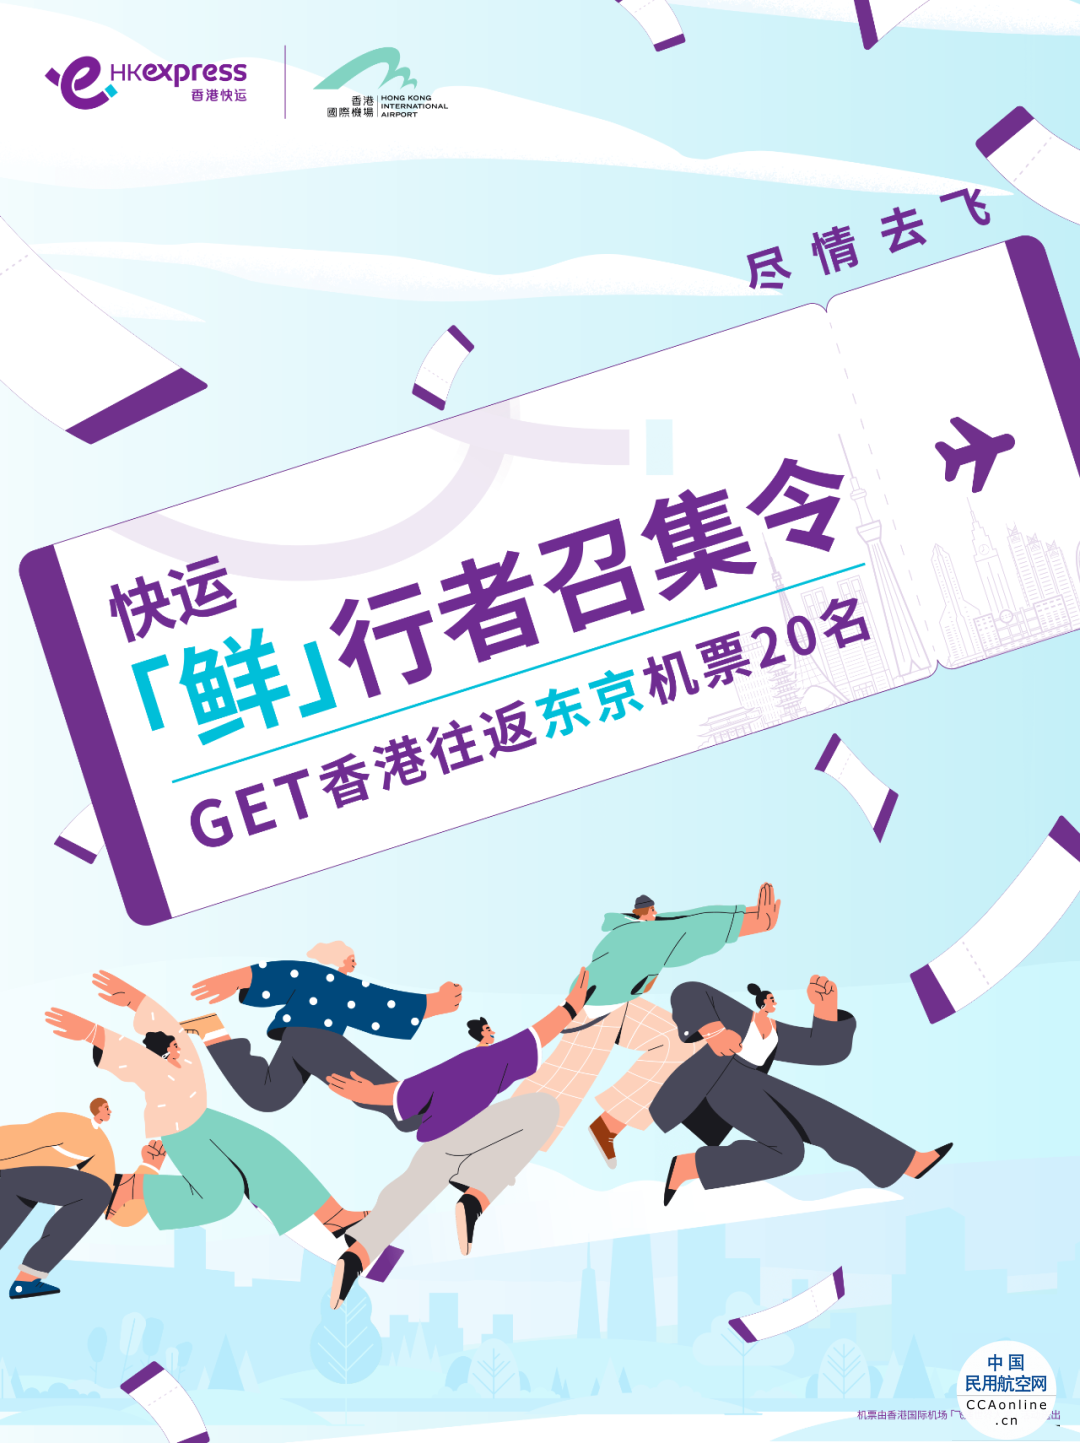 香港快运航空公布免费机票领取方法